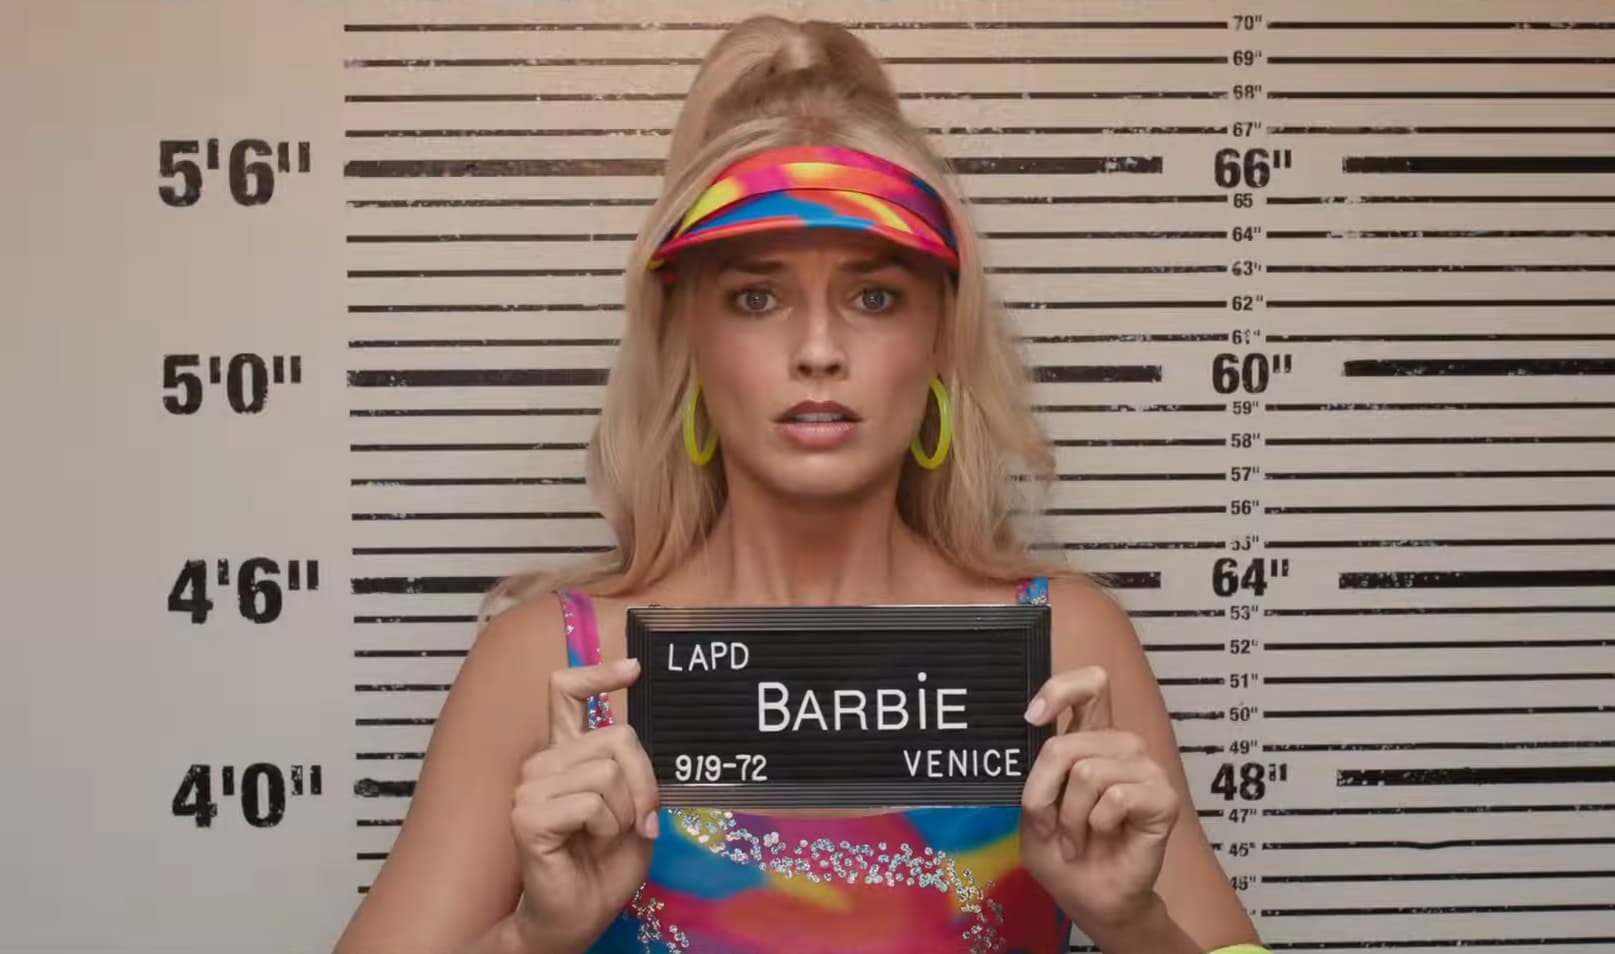 Filme 'Barbie' ultrapassa US$ 1 bilhão em bilheteria, Eu 